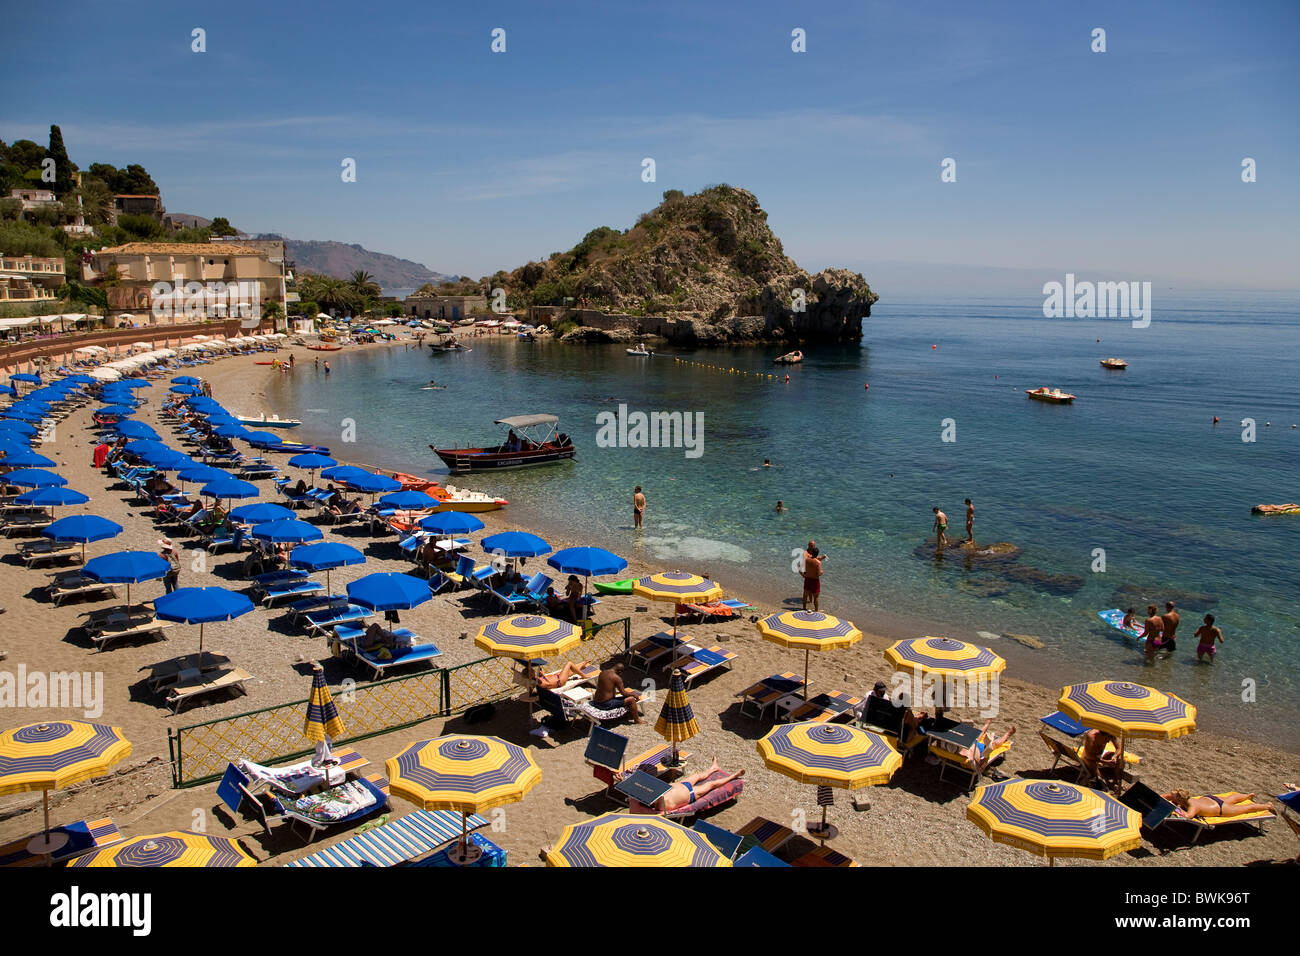 Beach, Mazzaro bathing bay, Taormina, Messina province, Sicily, Italy, Europe Stock Photo